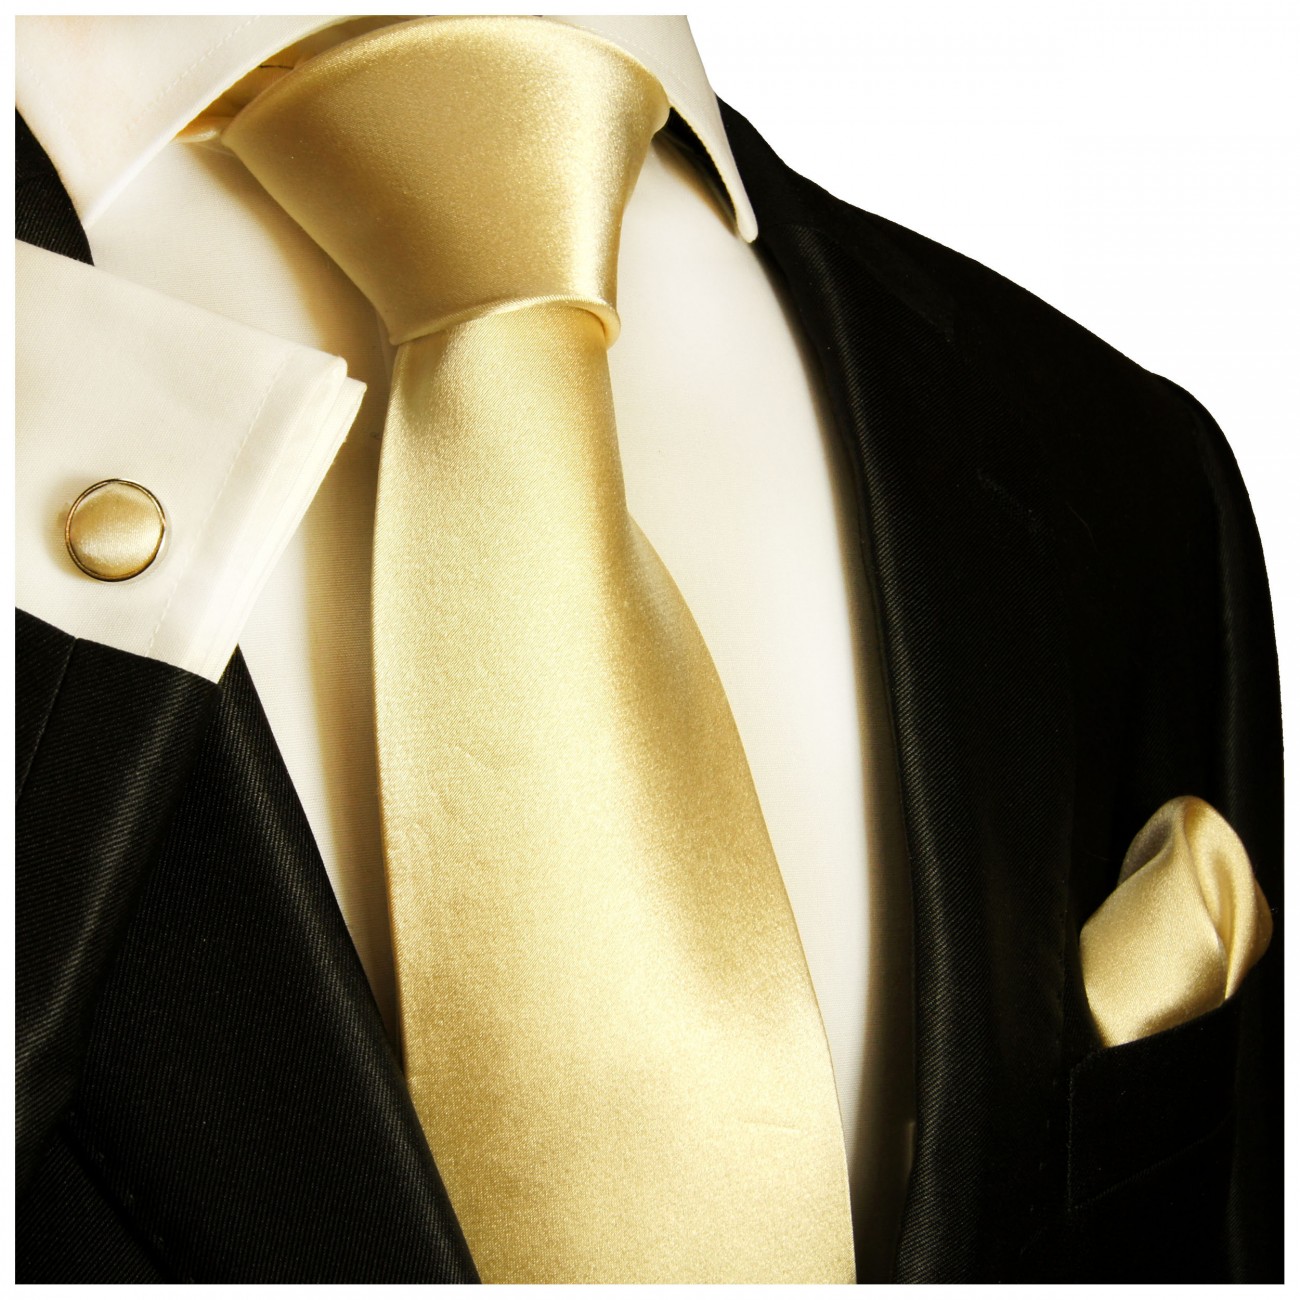 Krawatte gold uni satin mit Einstecktuch und Manschettenknöpfe